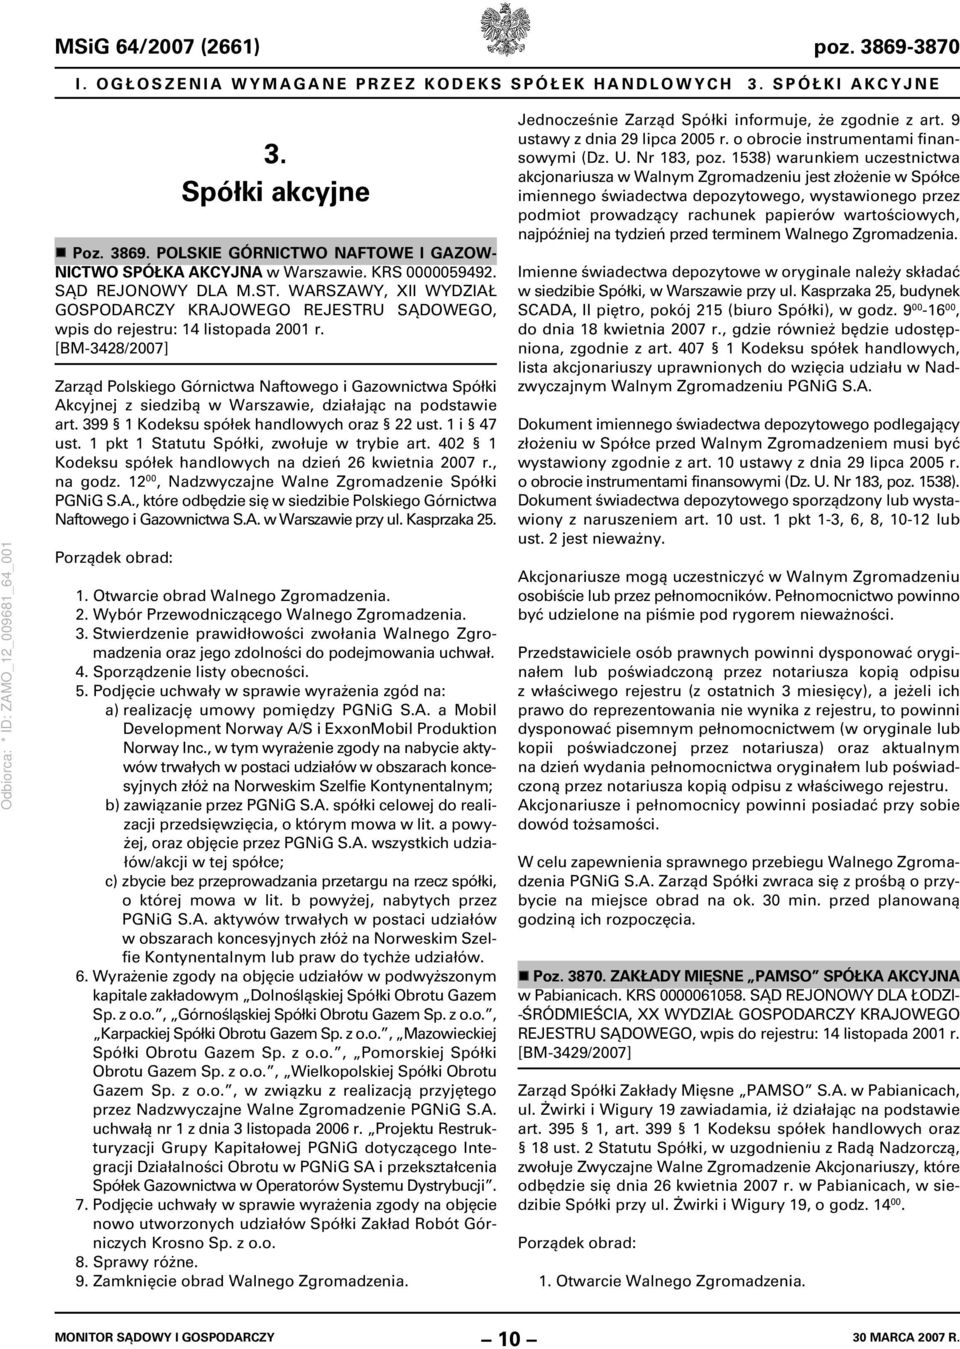 [BM-3428/2007] Zarząd Polskiego Górnictwa Naftowego i Gazownictwa Spółki Akcyjnej z siedzibą w Warszawie, działając na podstawie art. 399 1 Kodeksu spółek handlowych oraz 22 ust. 1 i 47 ust.